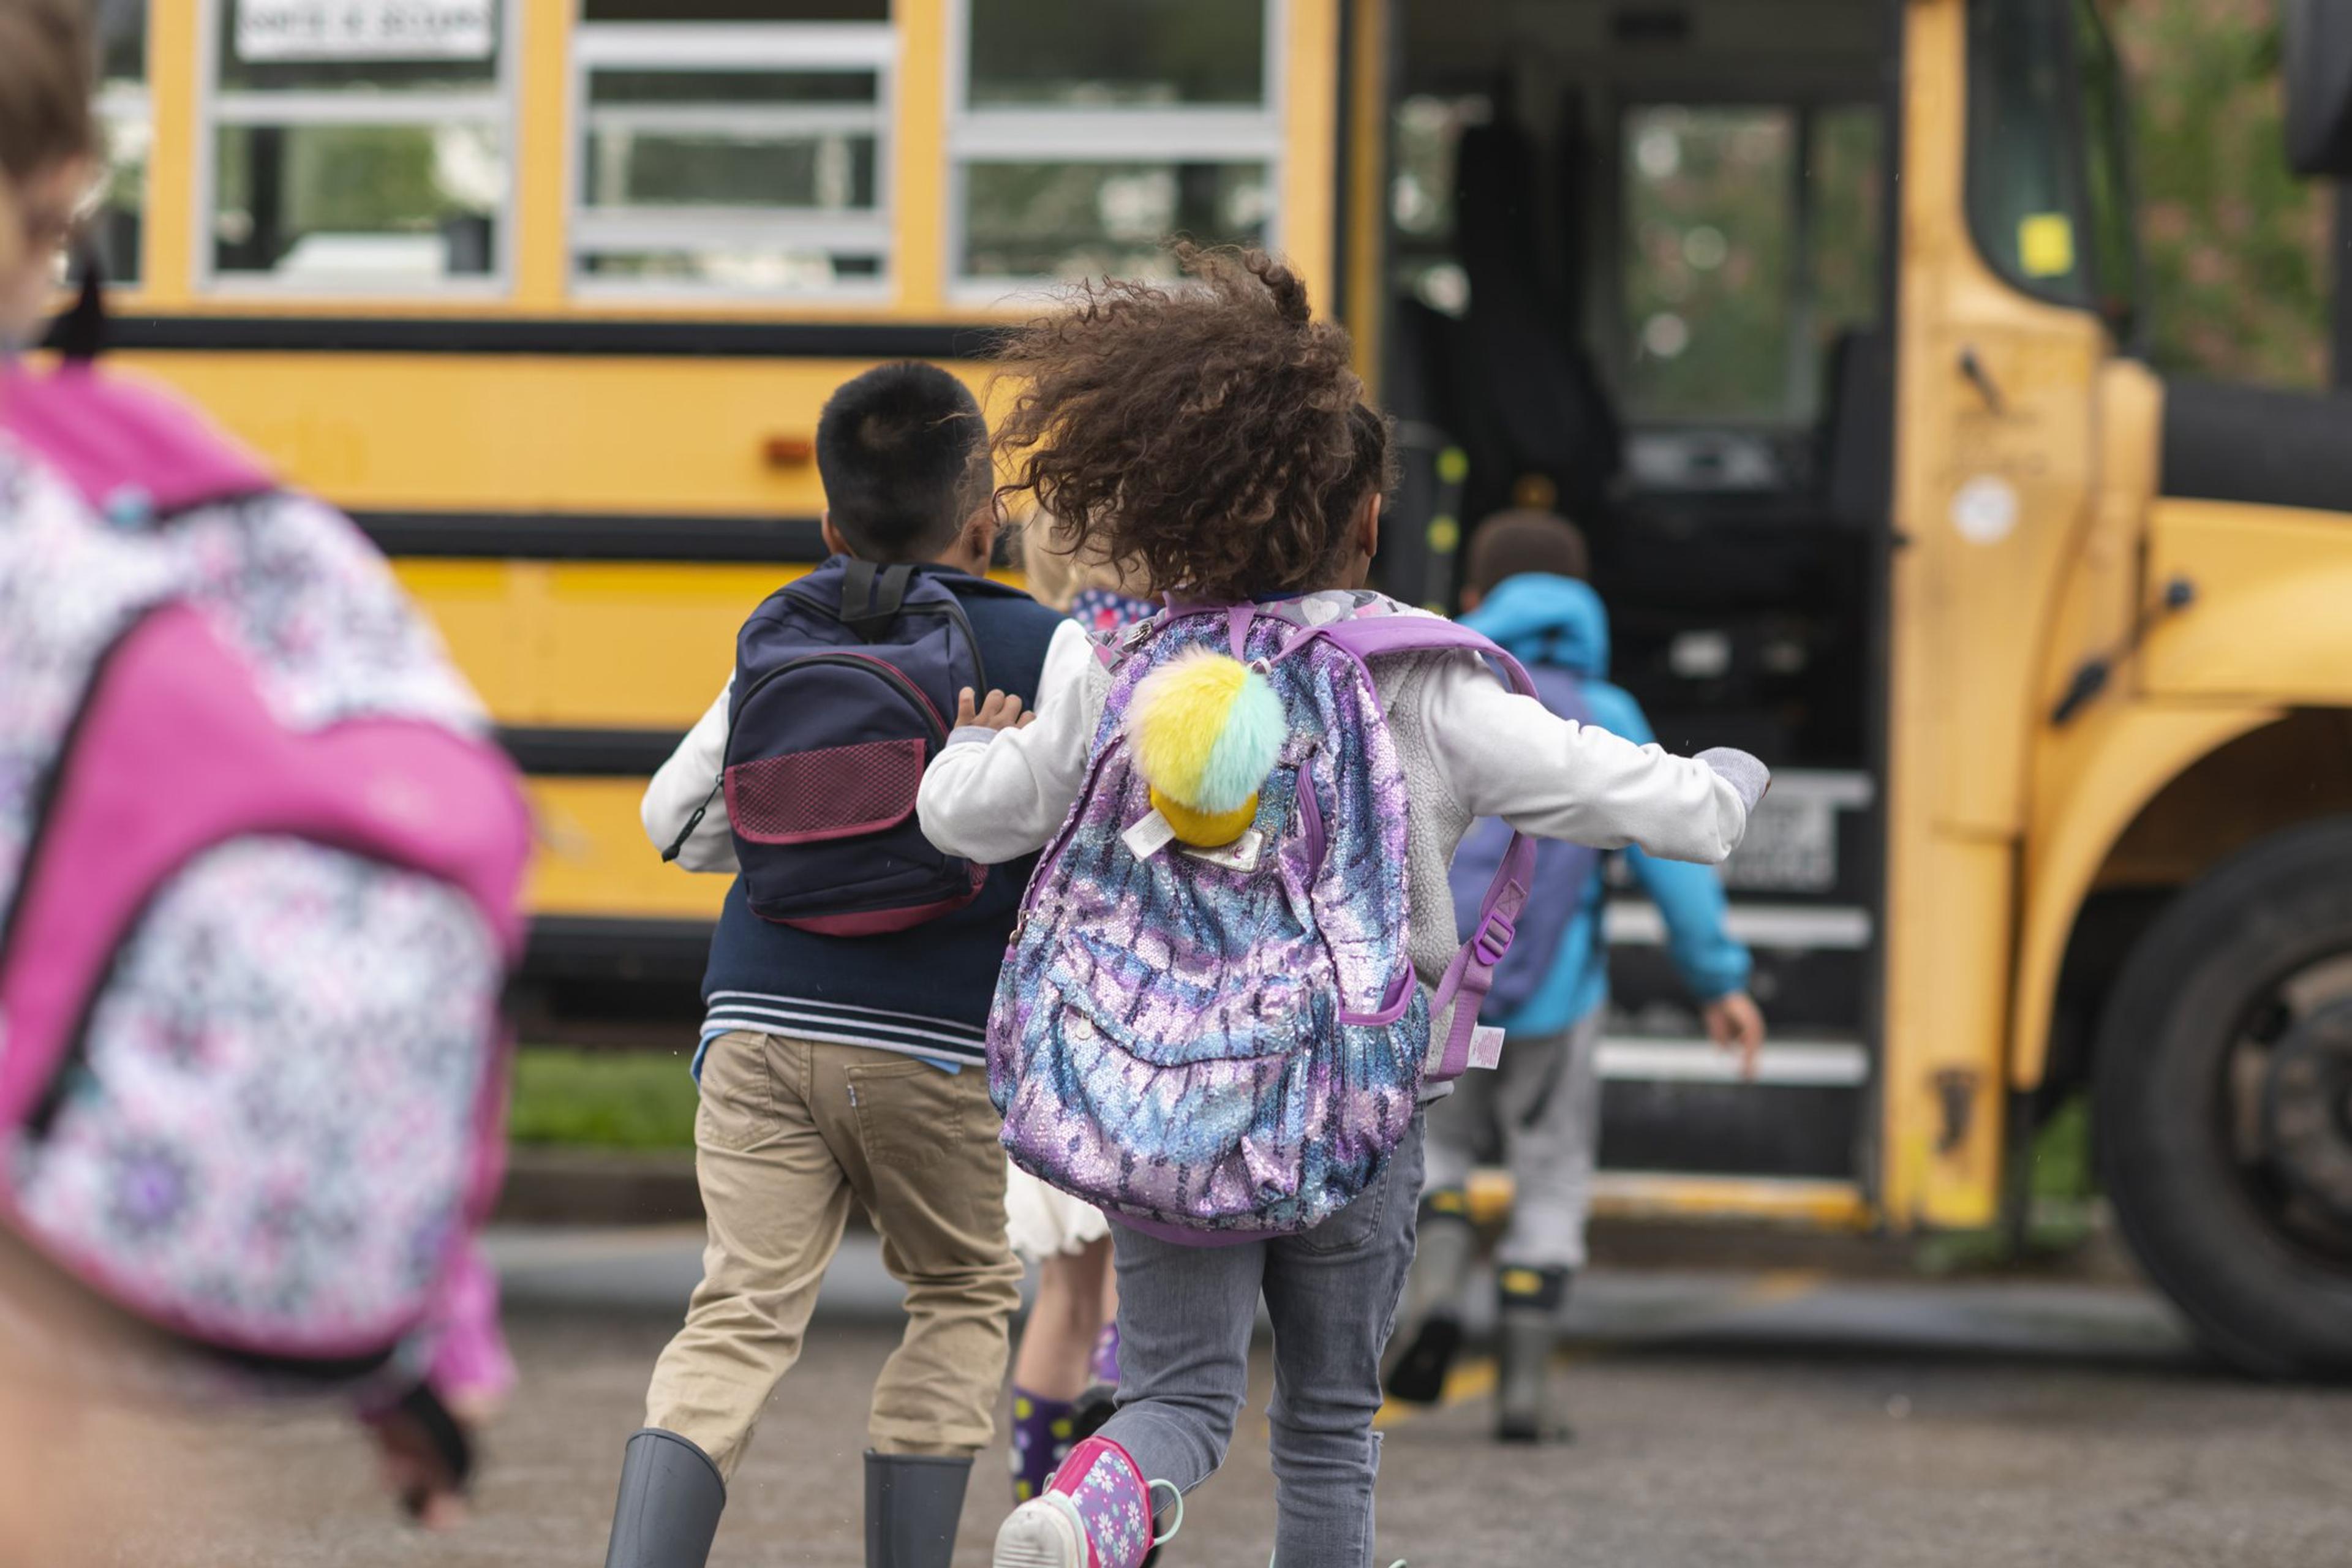 Elementary children get on a school bus